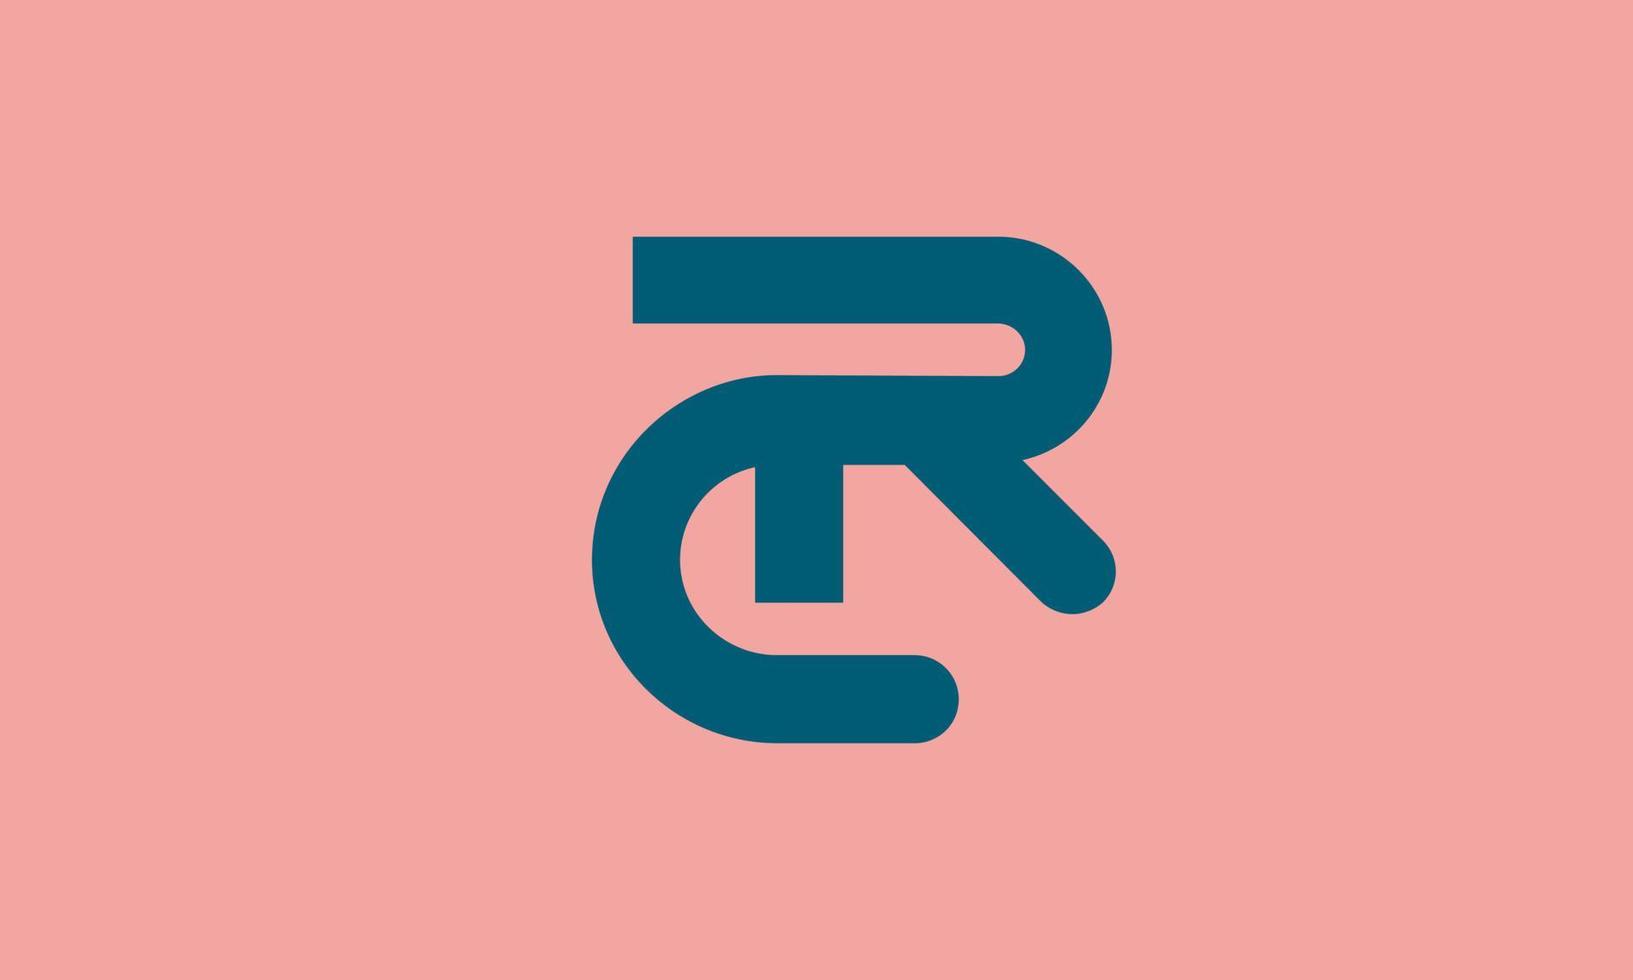 alfabeto lettere iniziali monogramma logo cr, rc, c e r vettore